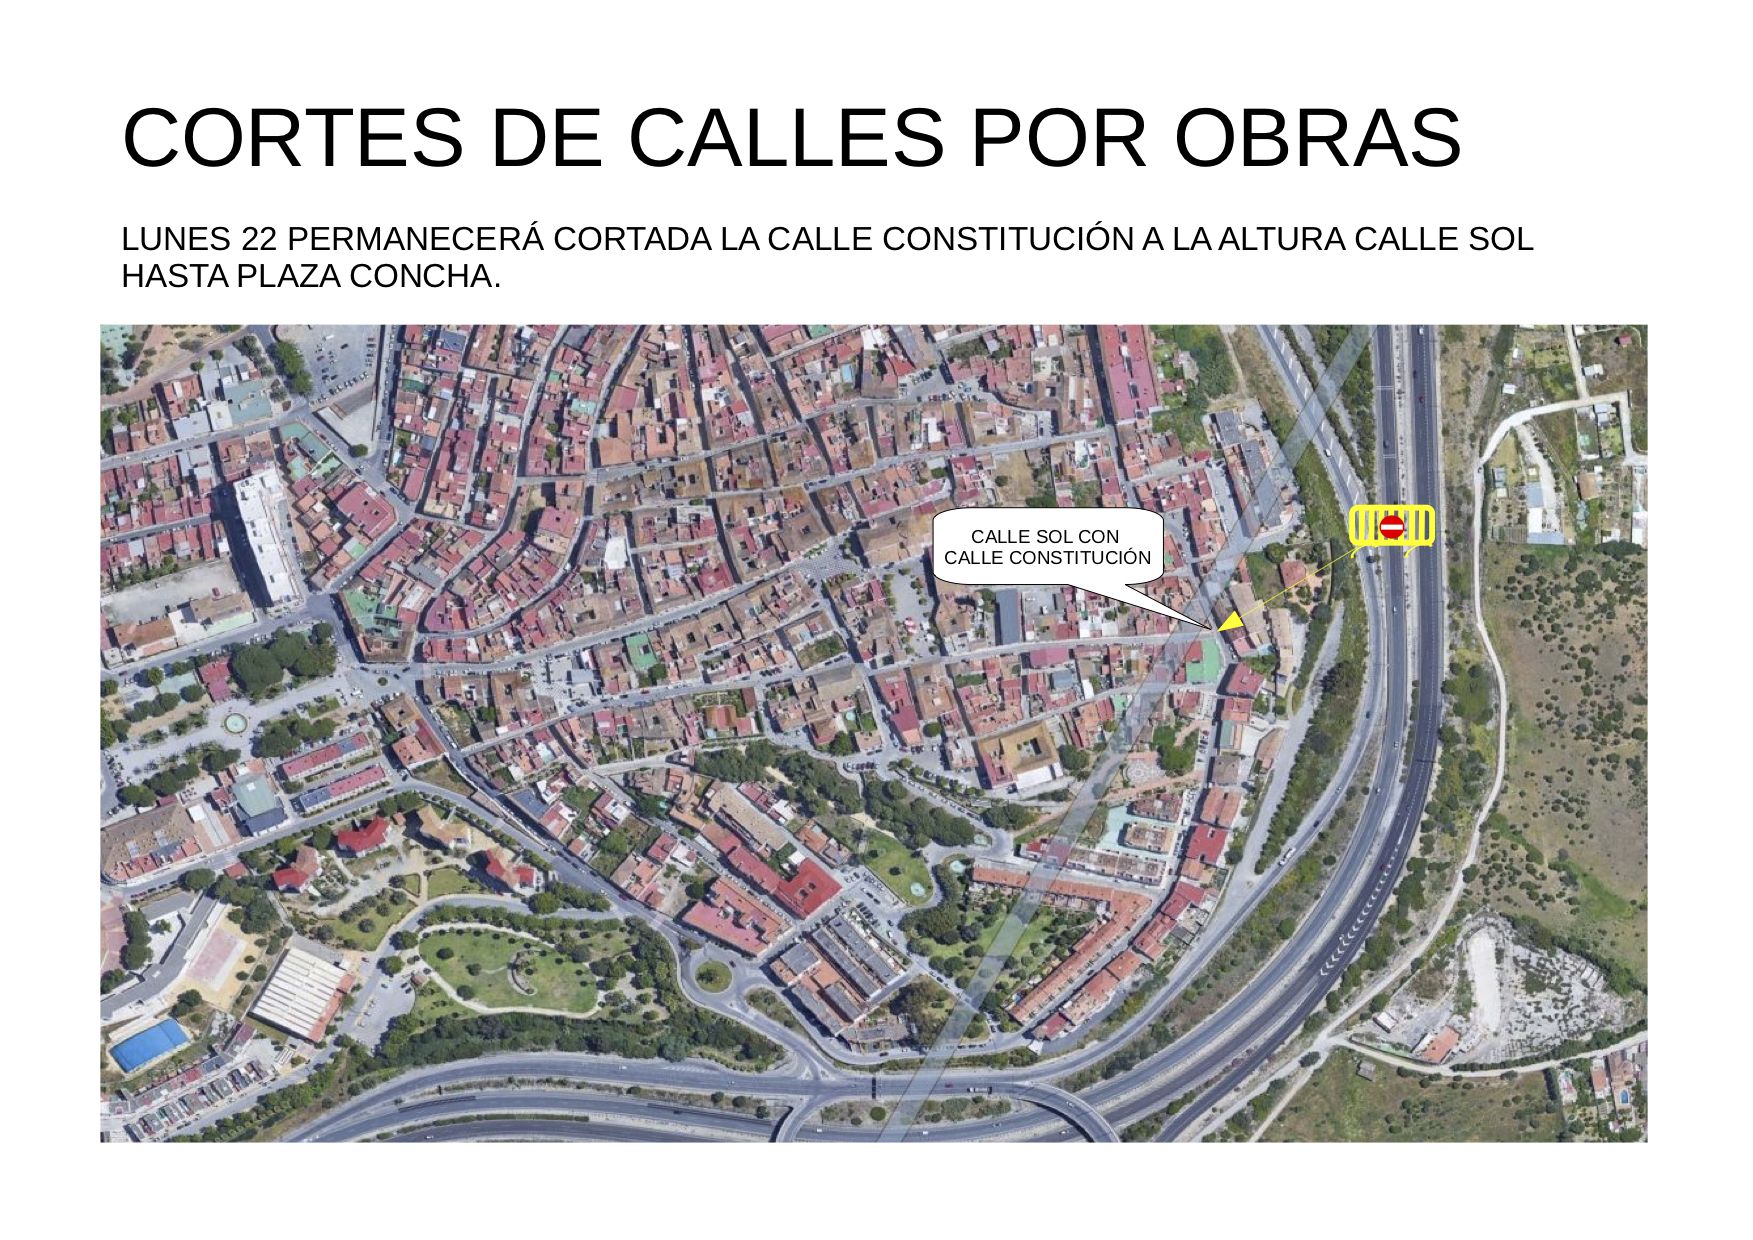 La calle Constitución, entre la calle Sol y la Plaza Concha, cerrada al tráfico este lunes.